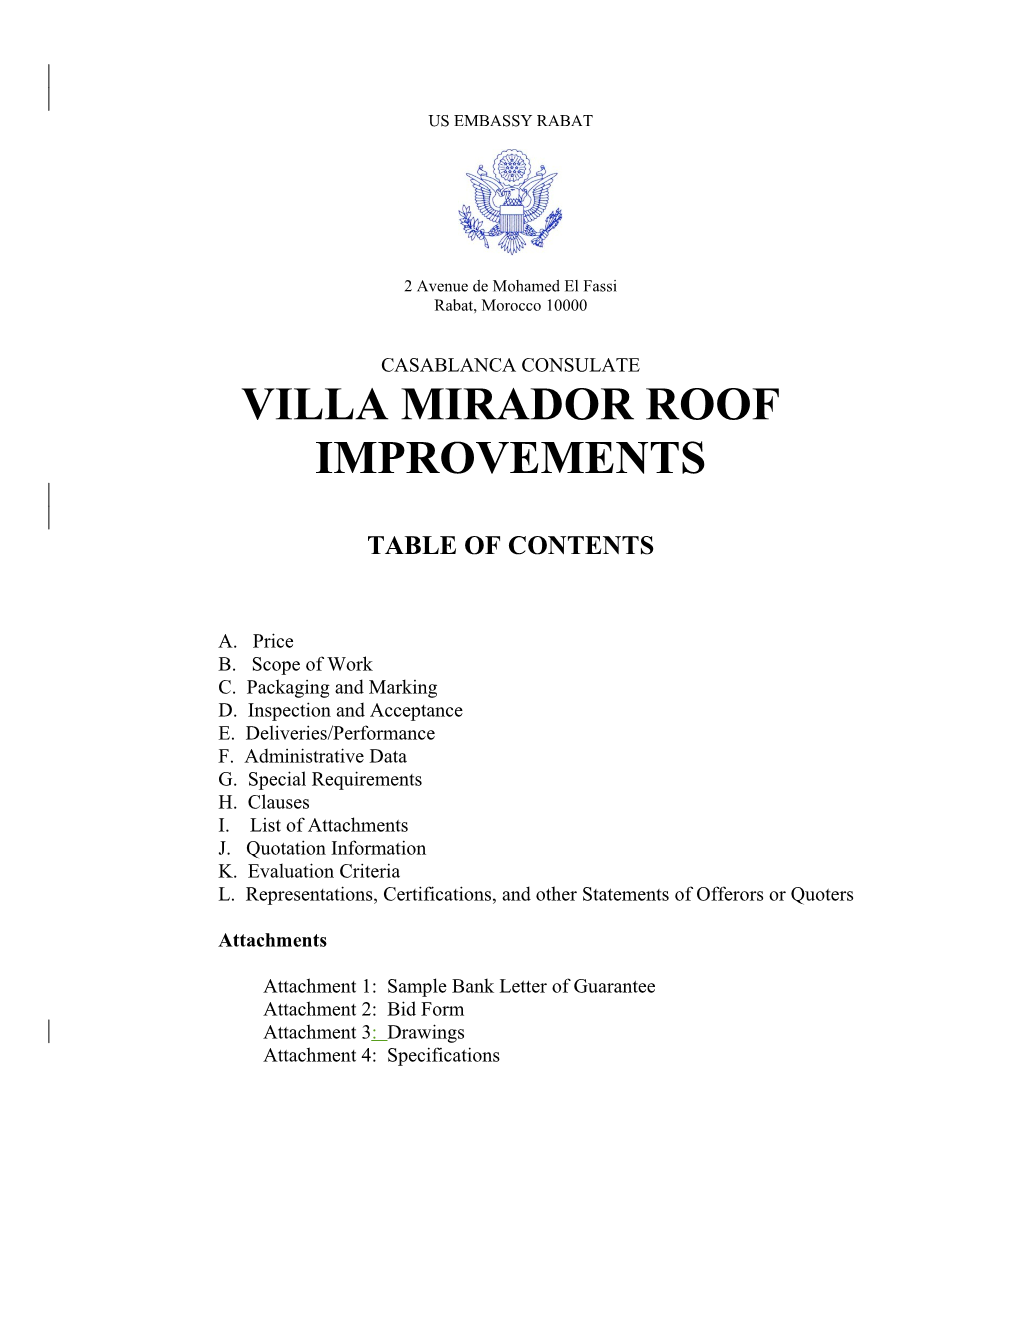 Villa Mirador Roof Improvements